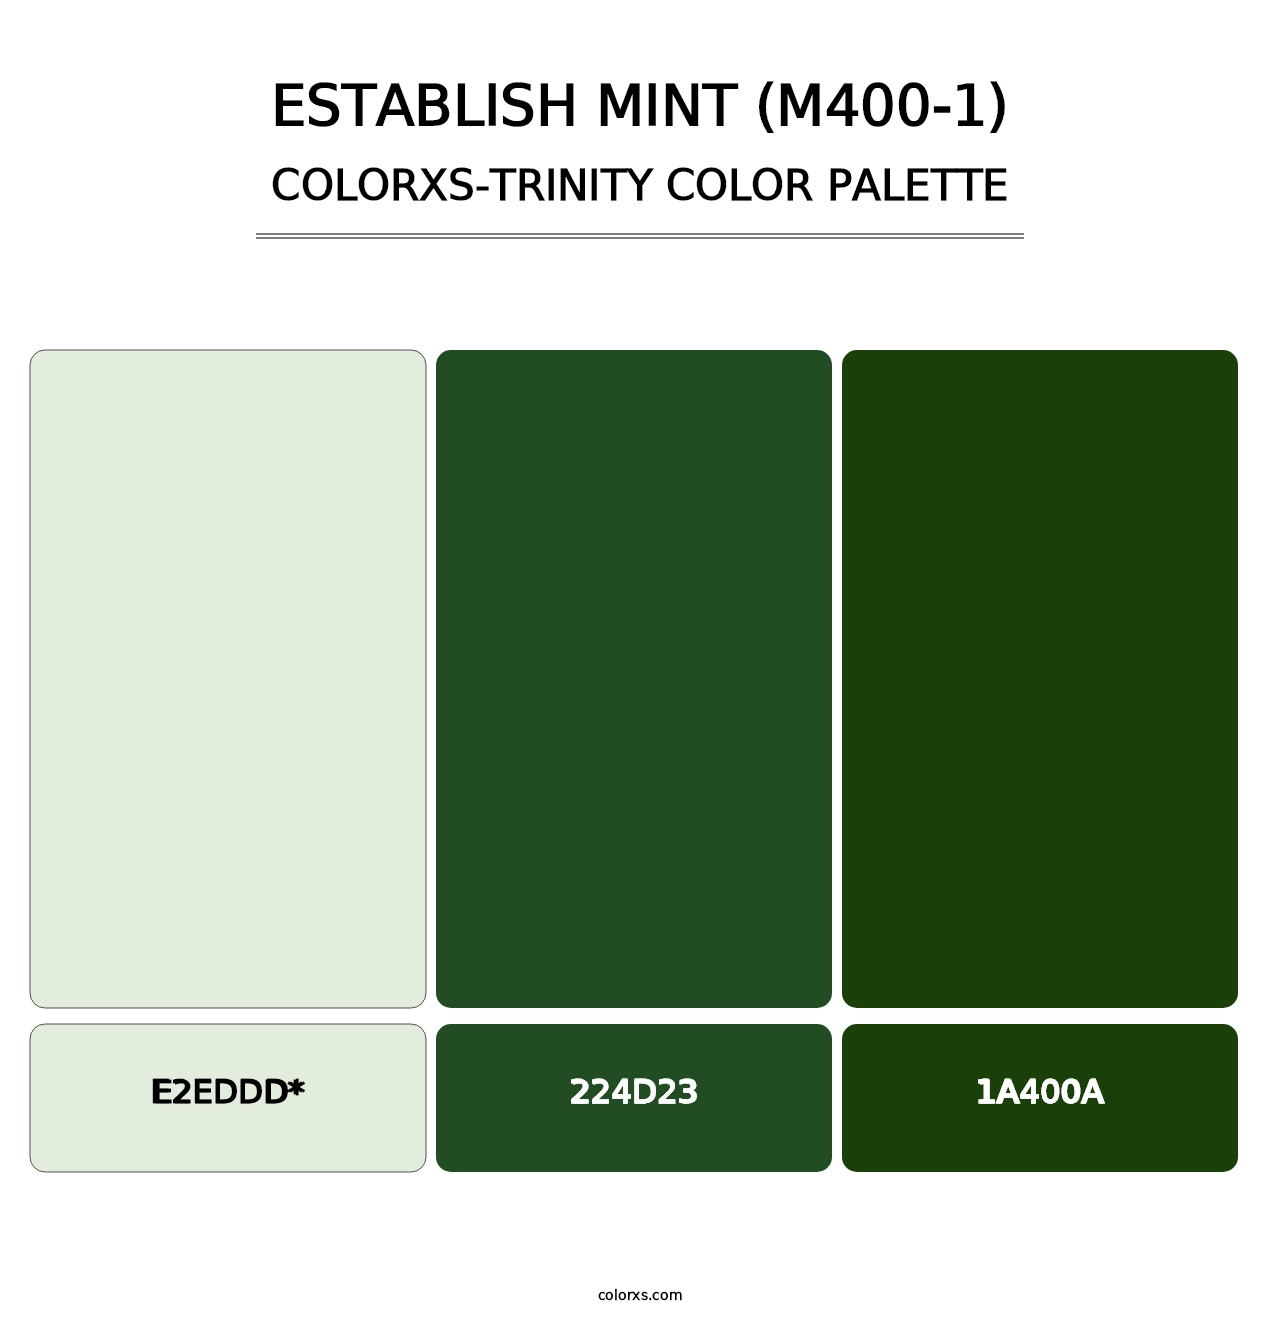 Establish Mint (M400-1) - Colorxs Trinity Palette